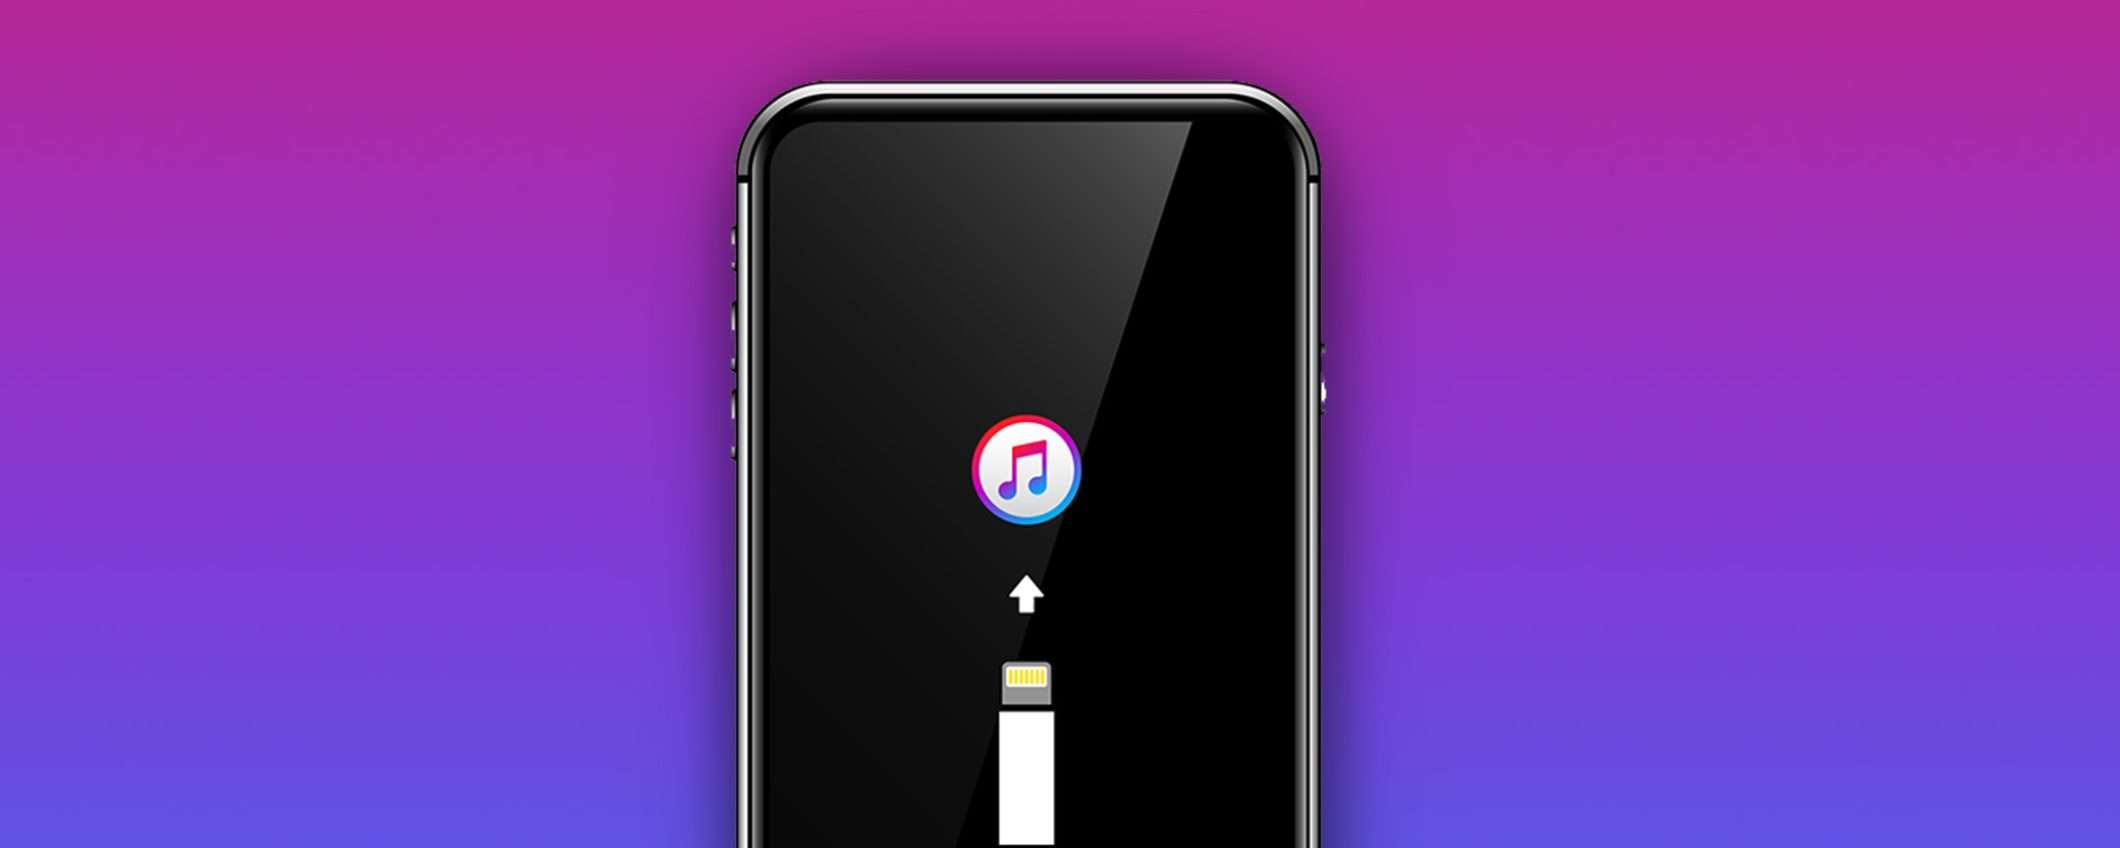 Come trasferire musica su iPhone senza iTunes